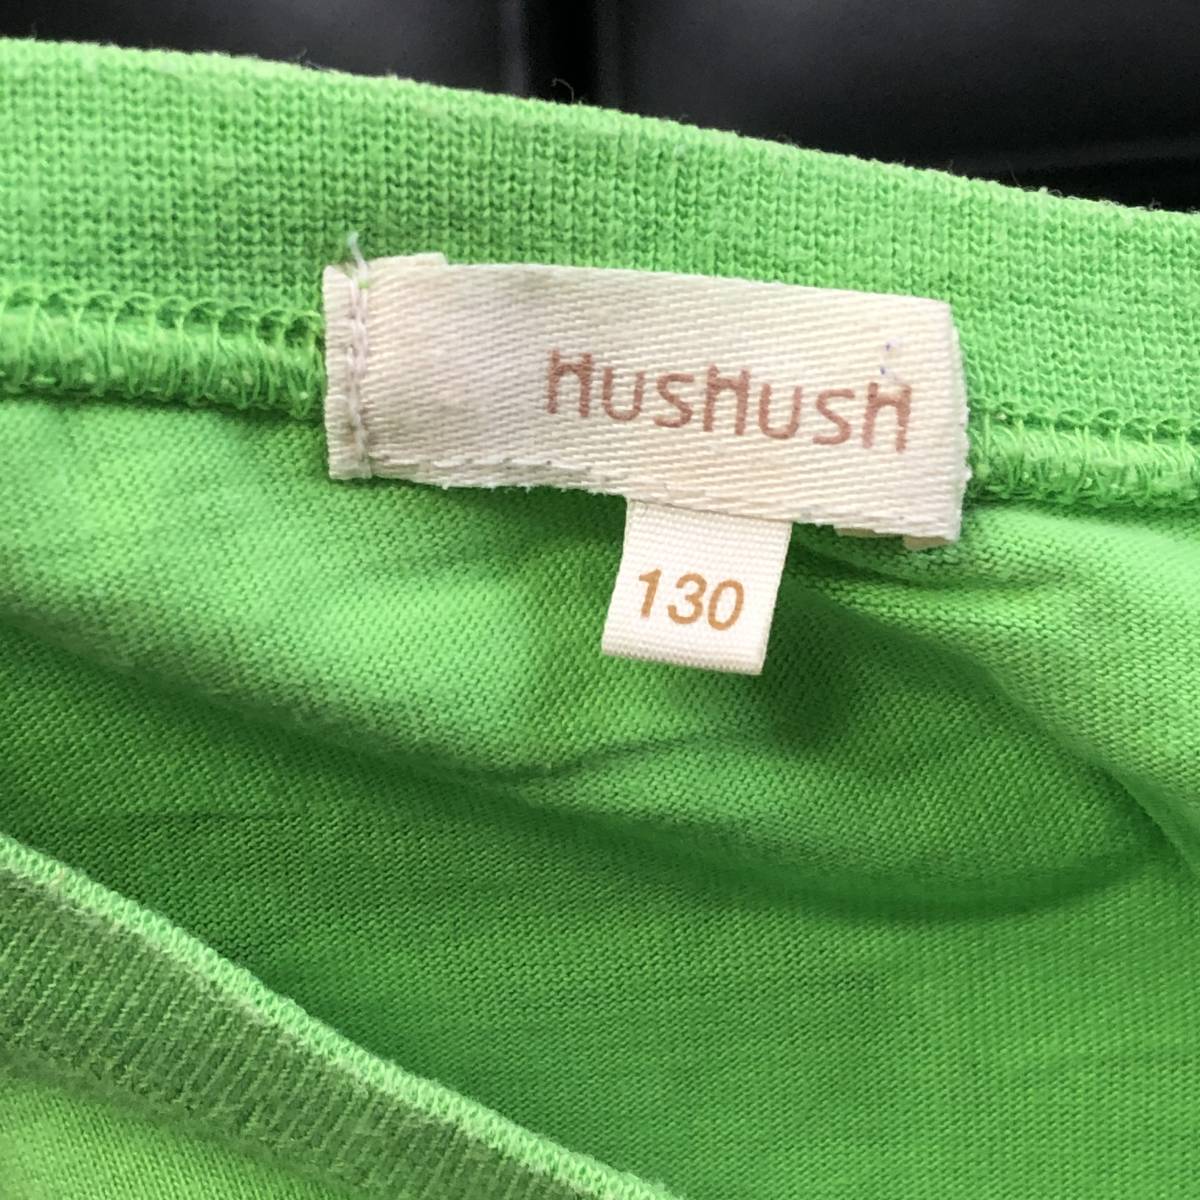 [ ребенок одежда ] HusHush короткий рукав футболка красочный . Logo Apple зеленый 130 размер HusHush детская одежда б/у 